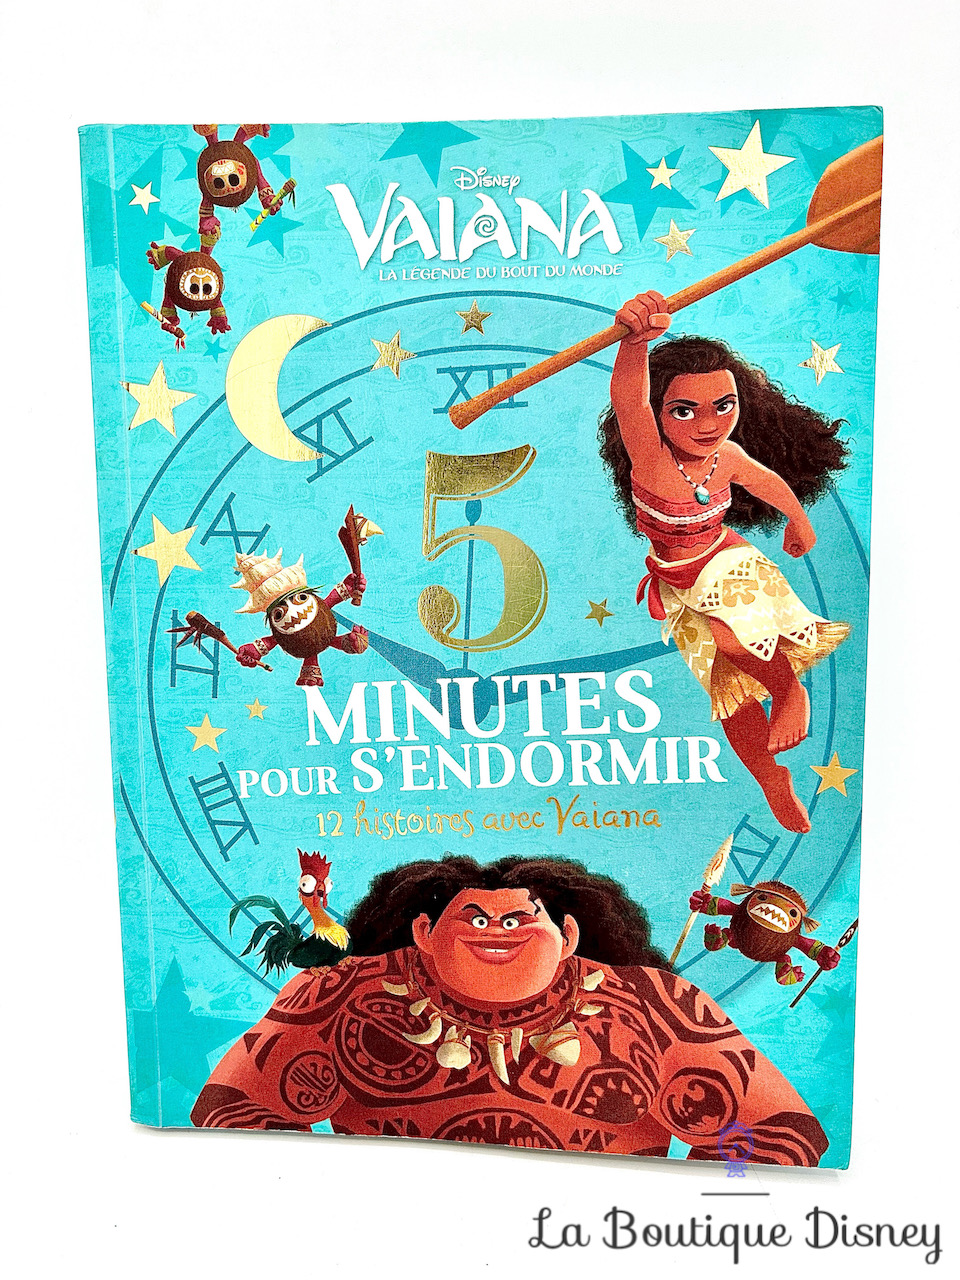 Vaïana Légende du bout du monde Poupée Maui Figurines Disney Store 